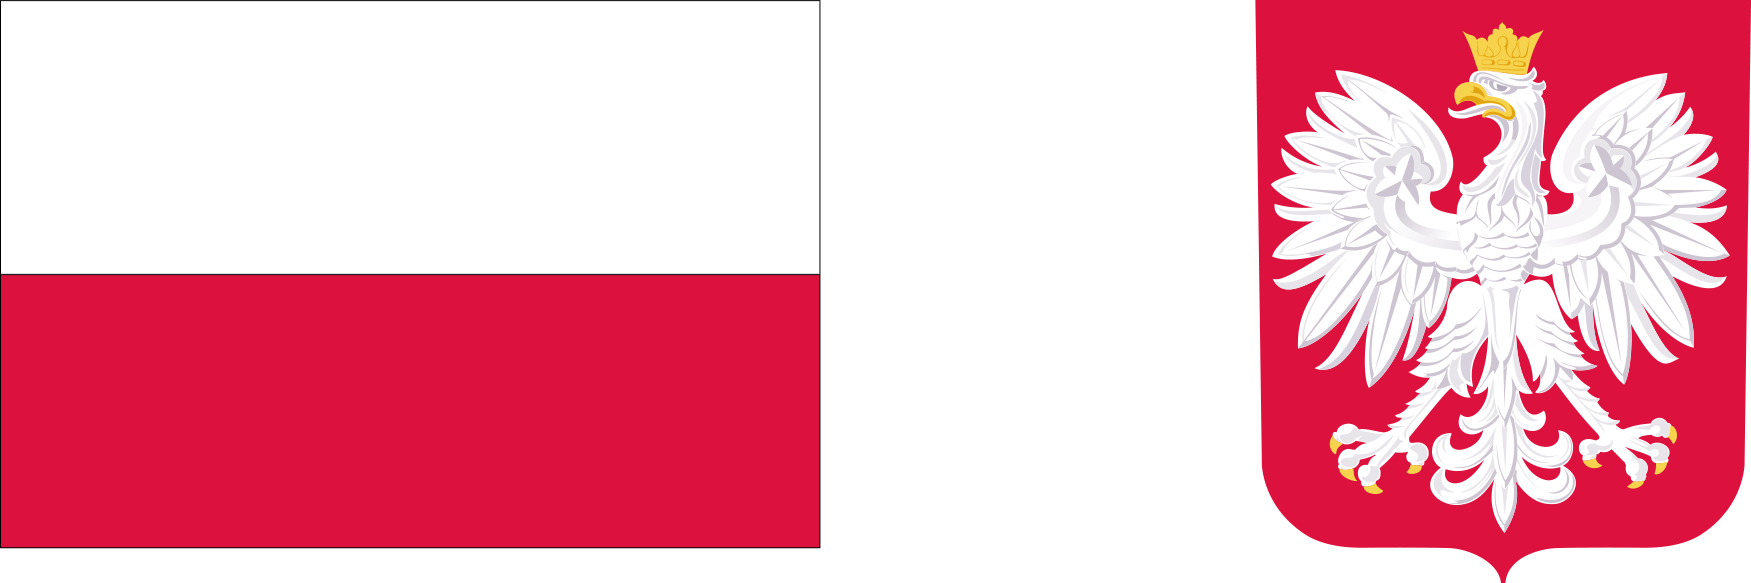 Logotyp konkursu, flaga Polski oraz godło